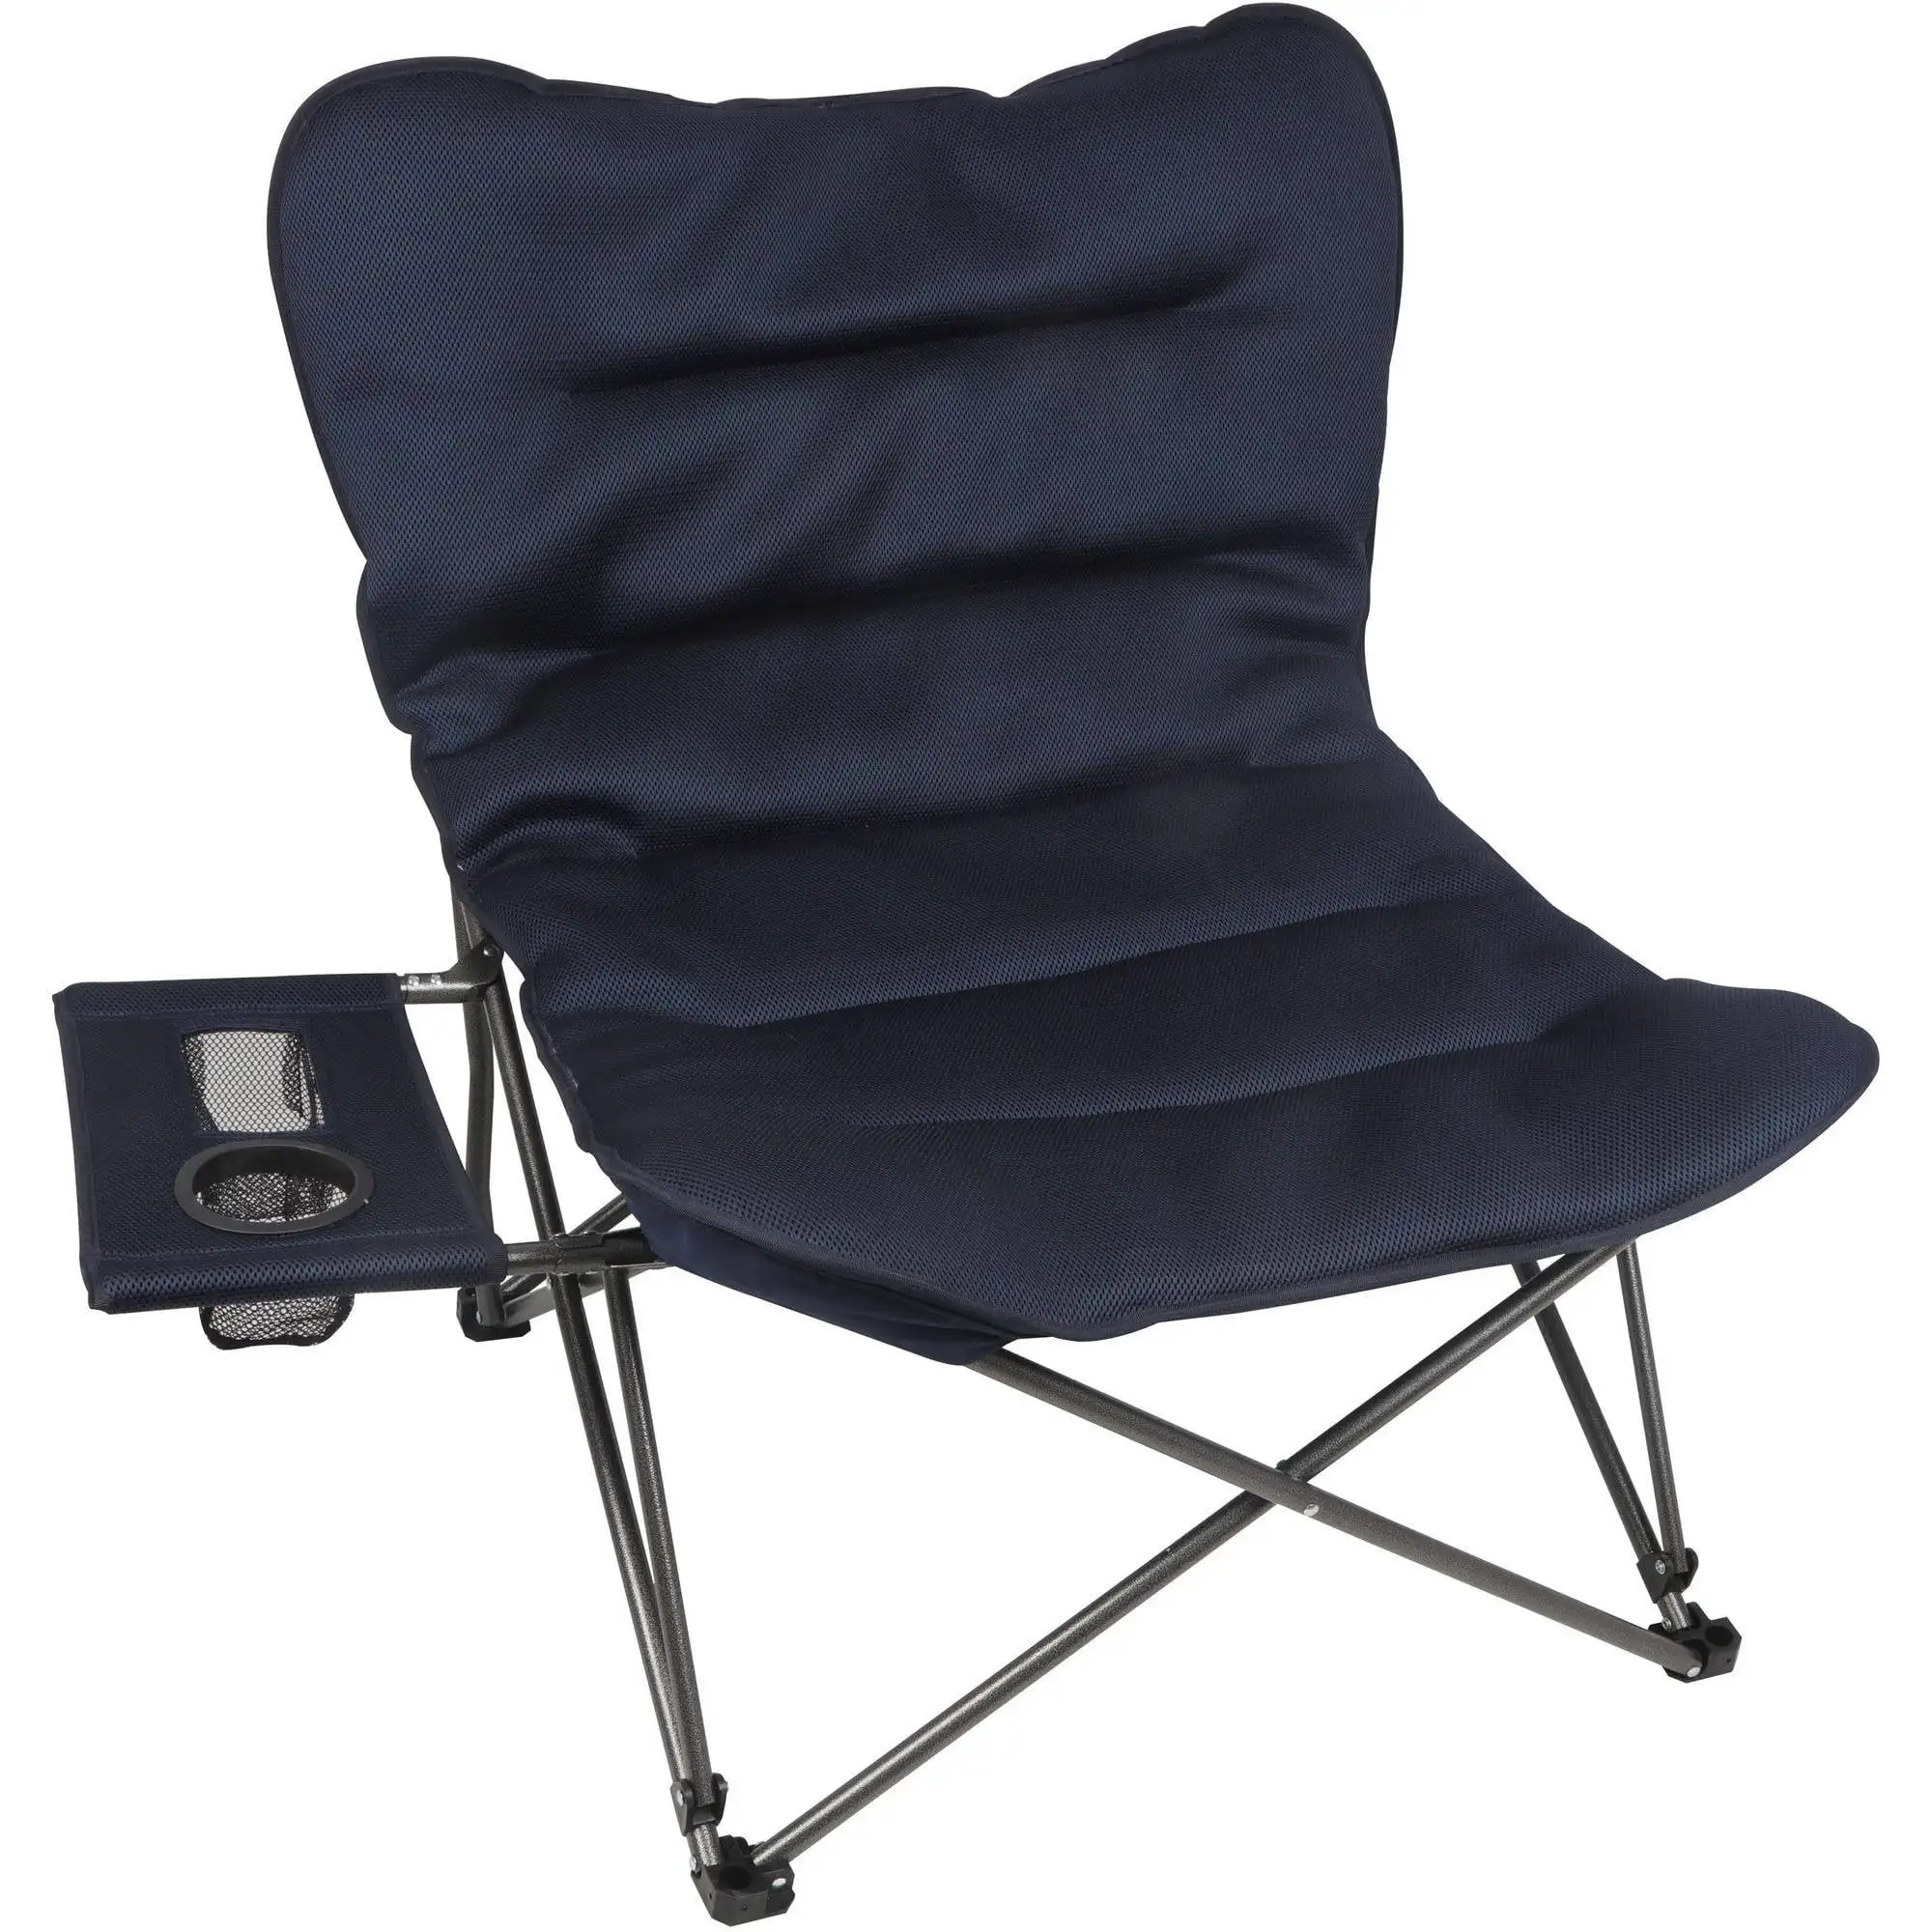 

Большой расслабляющий плюшевый стул Ozark Trail с боковым столиком, синий, для взрослых